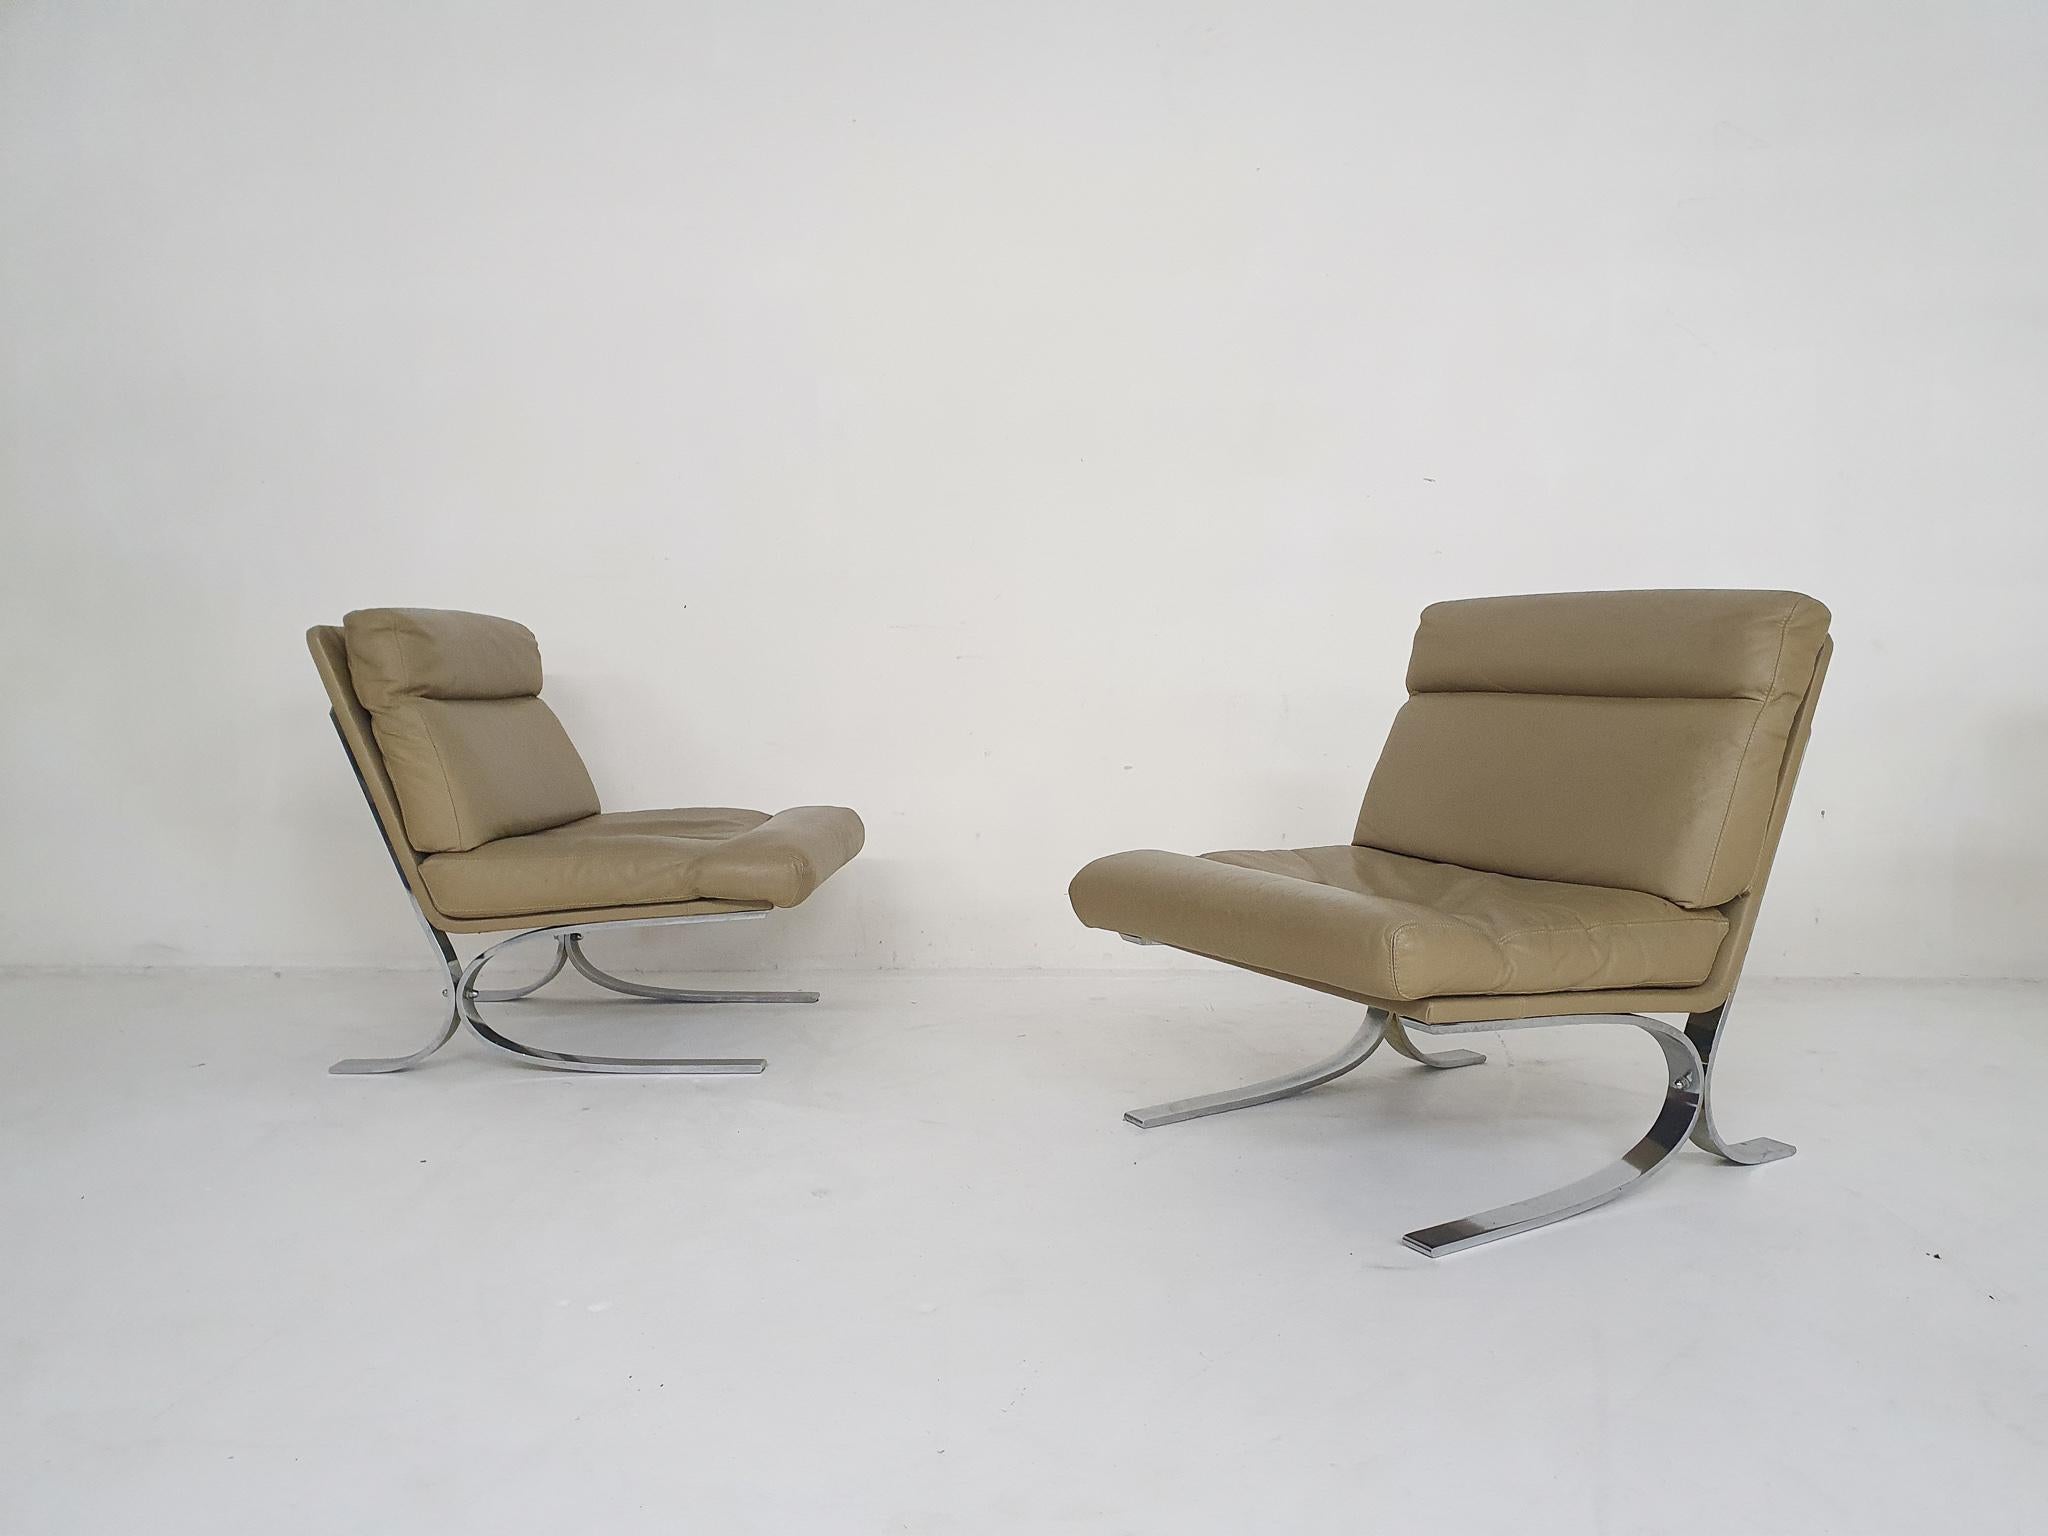 Set aus zwei hochwertigen Loungesesseln aus verchromtem Metall mit einem Bezug aus cremefarbenem oder beigem Leder.

Wir glauben, dass sie von Paul Tuttle für Strässle, Schweiz, entworfen wurden. Die Stühle sind seinem Lounge-Sessel 